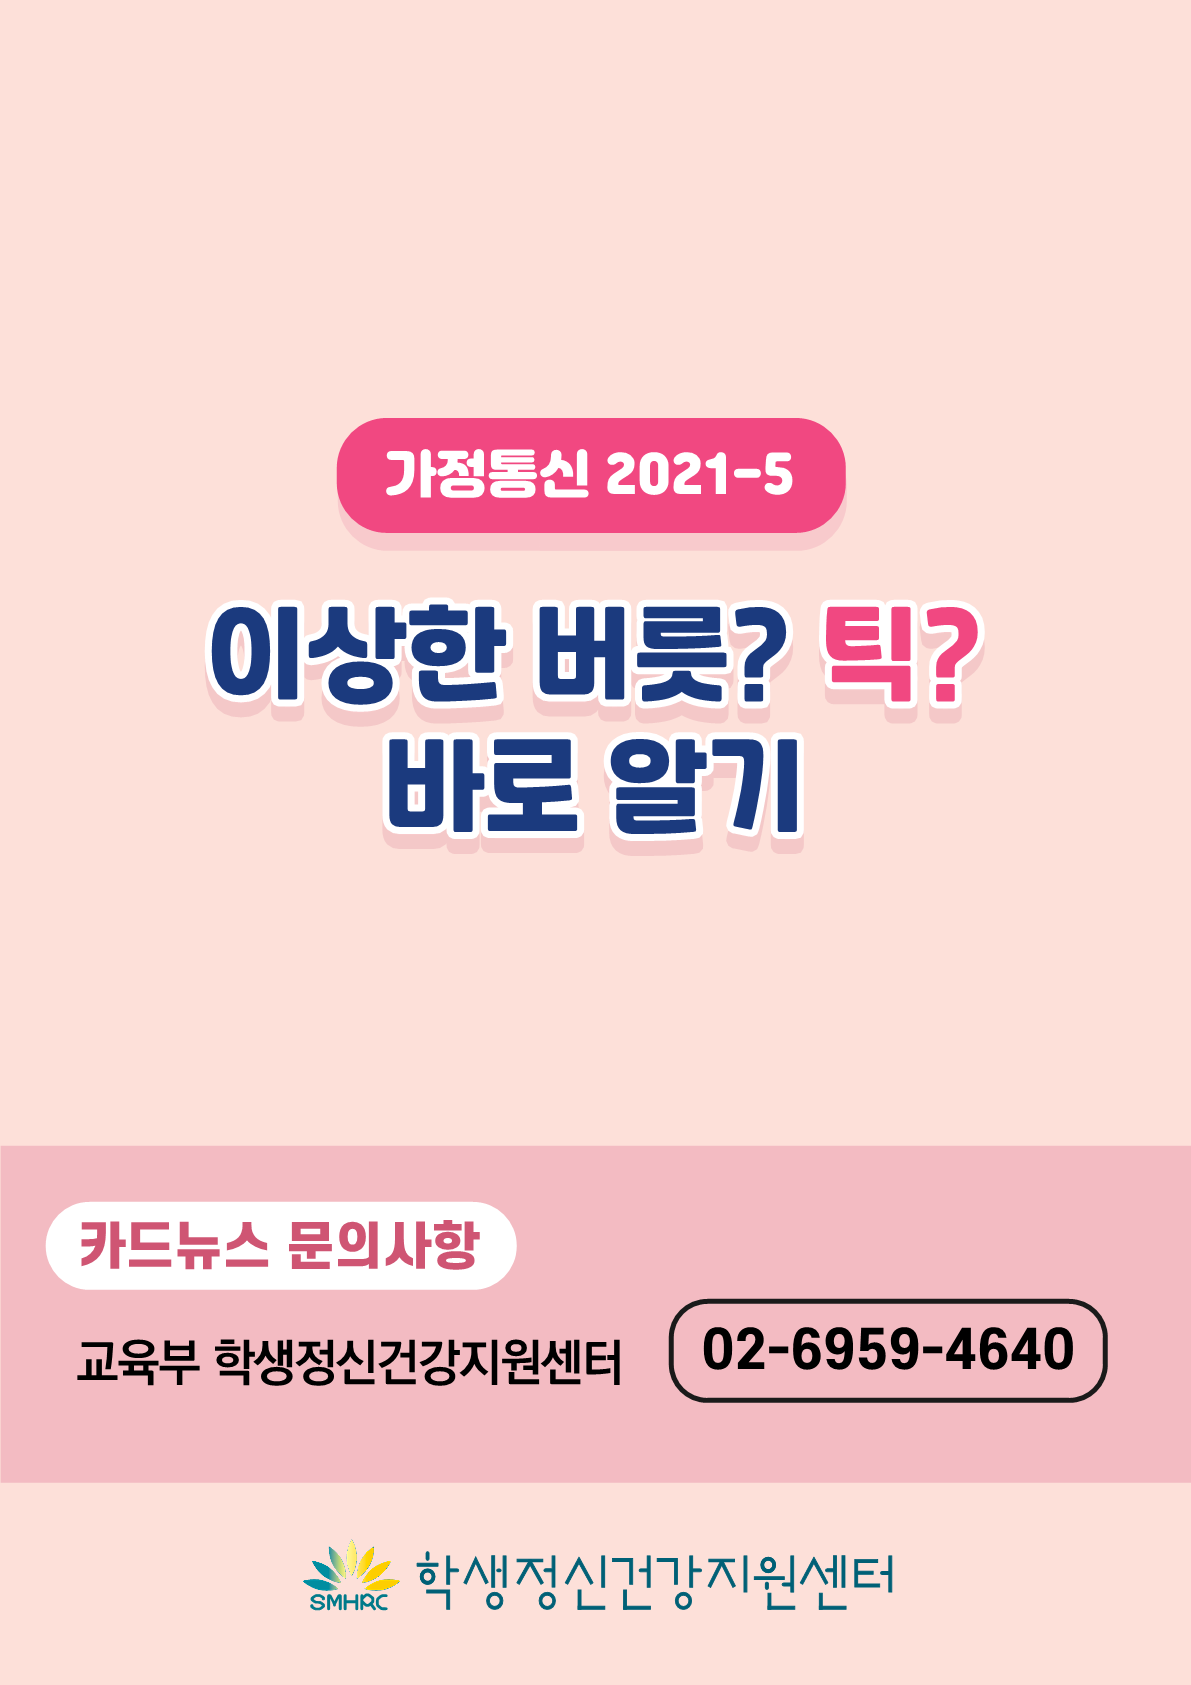 [붙임2]카드뉴스 제2021-5_틱장애(초등학부모용)_10.png